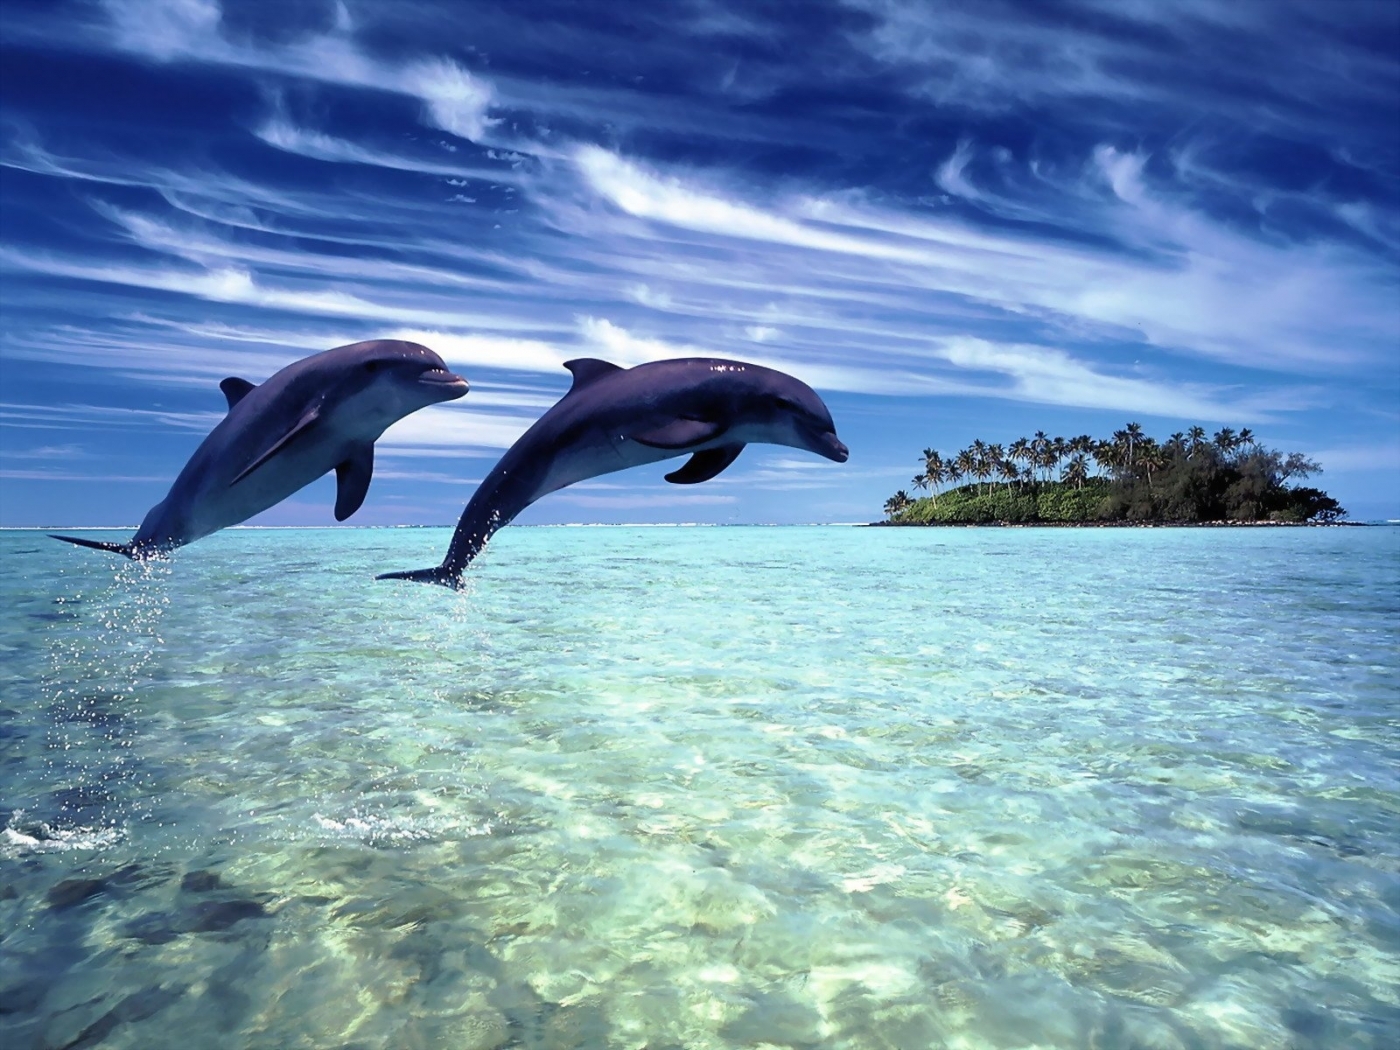 Скачать обои Дельфины на телефон бесплатно